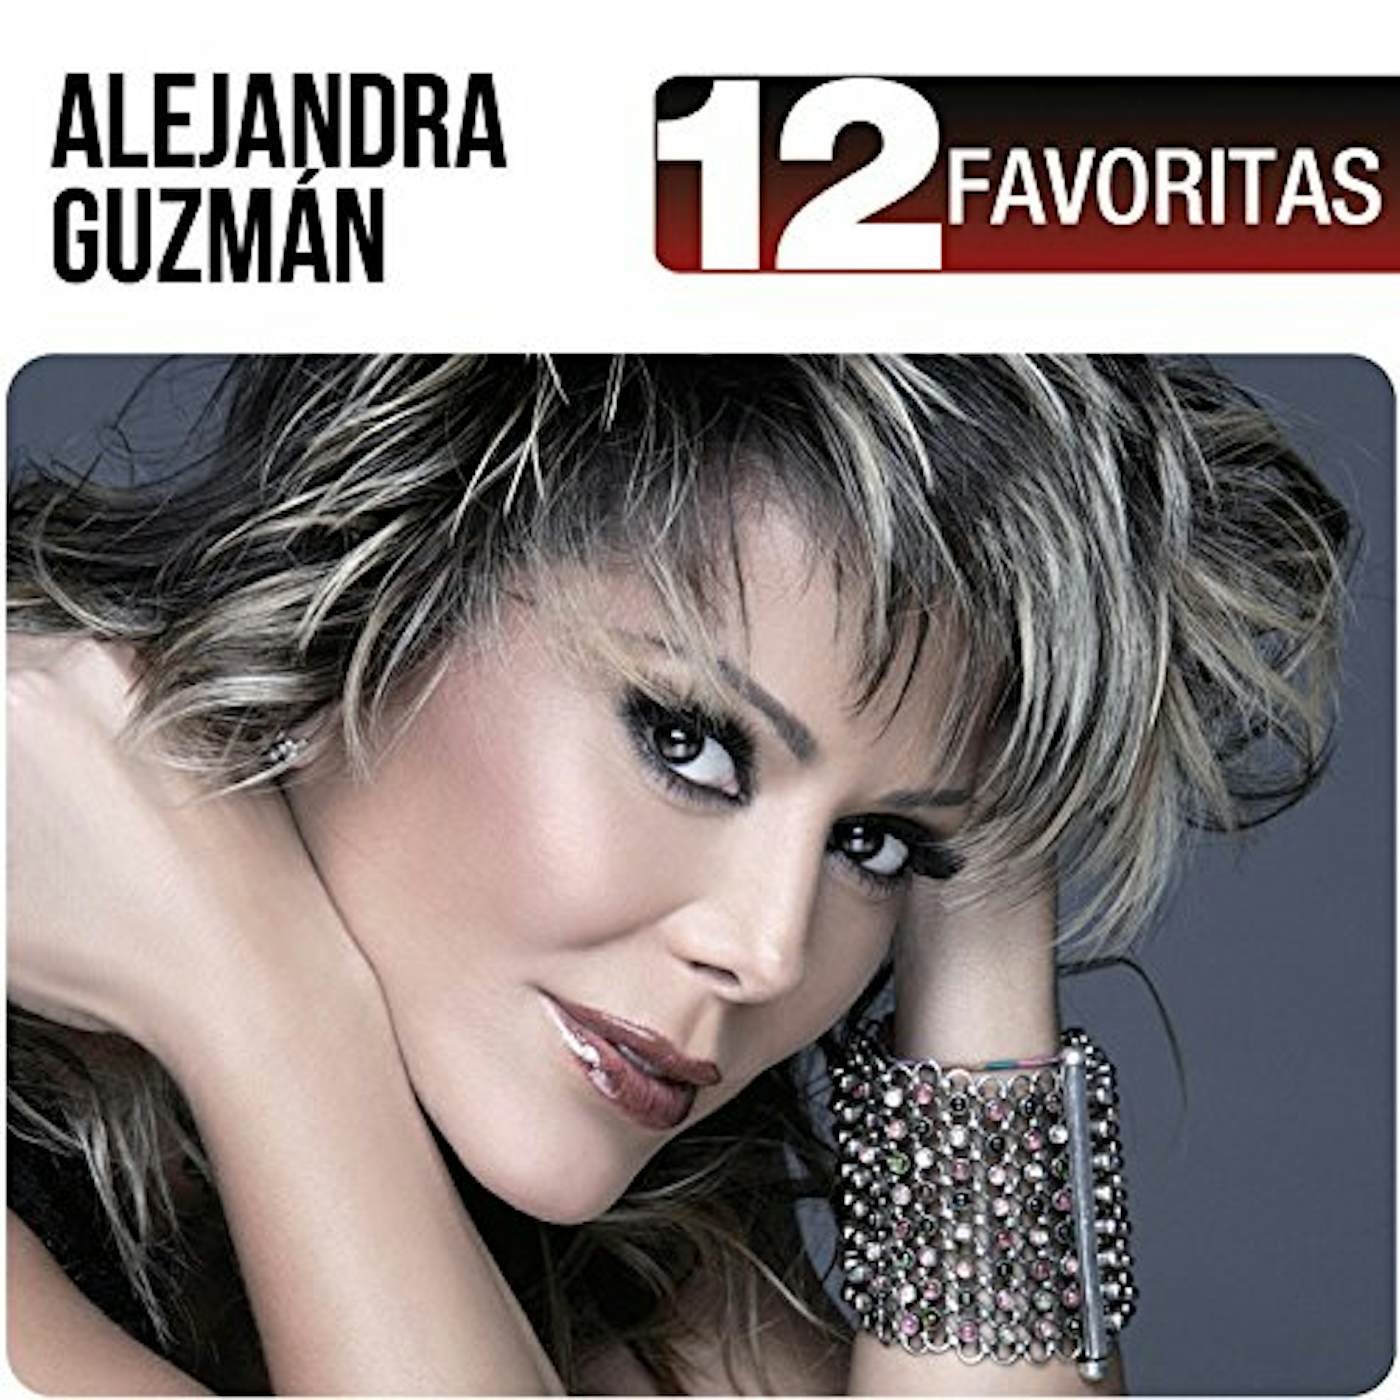 Alejandra Guzman 12 FAVORITAS CD